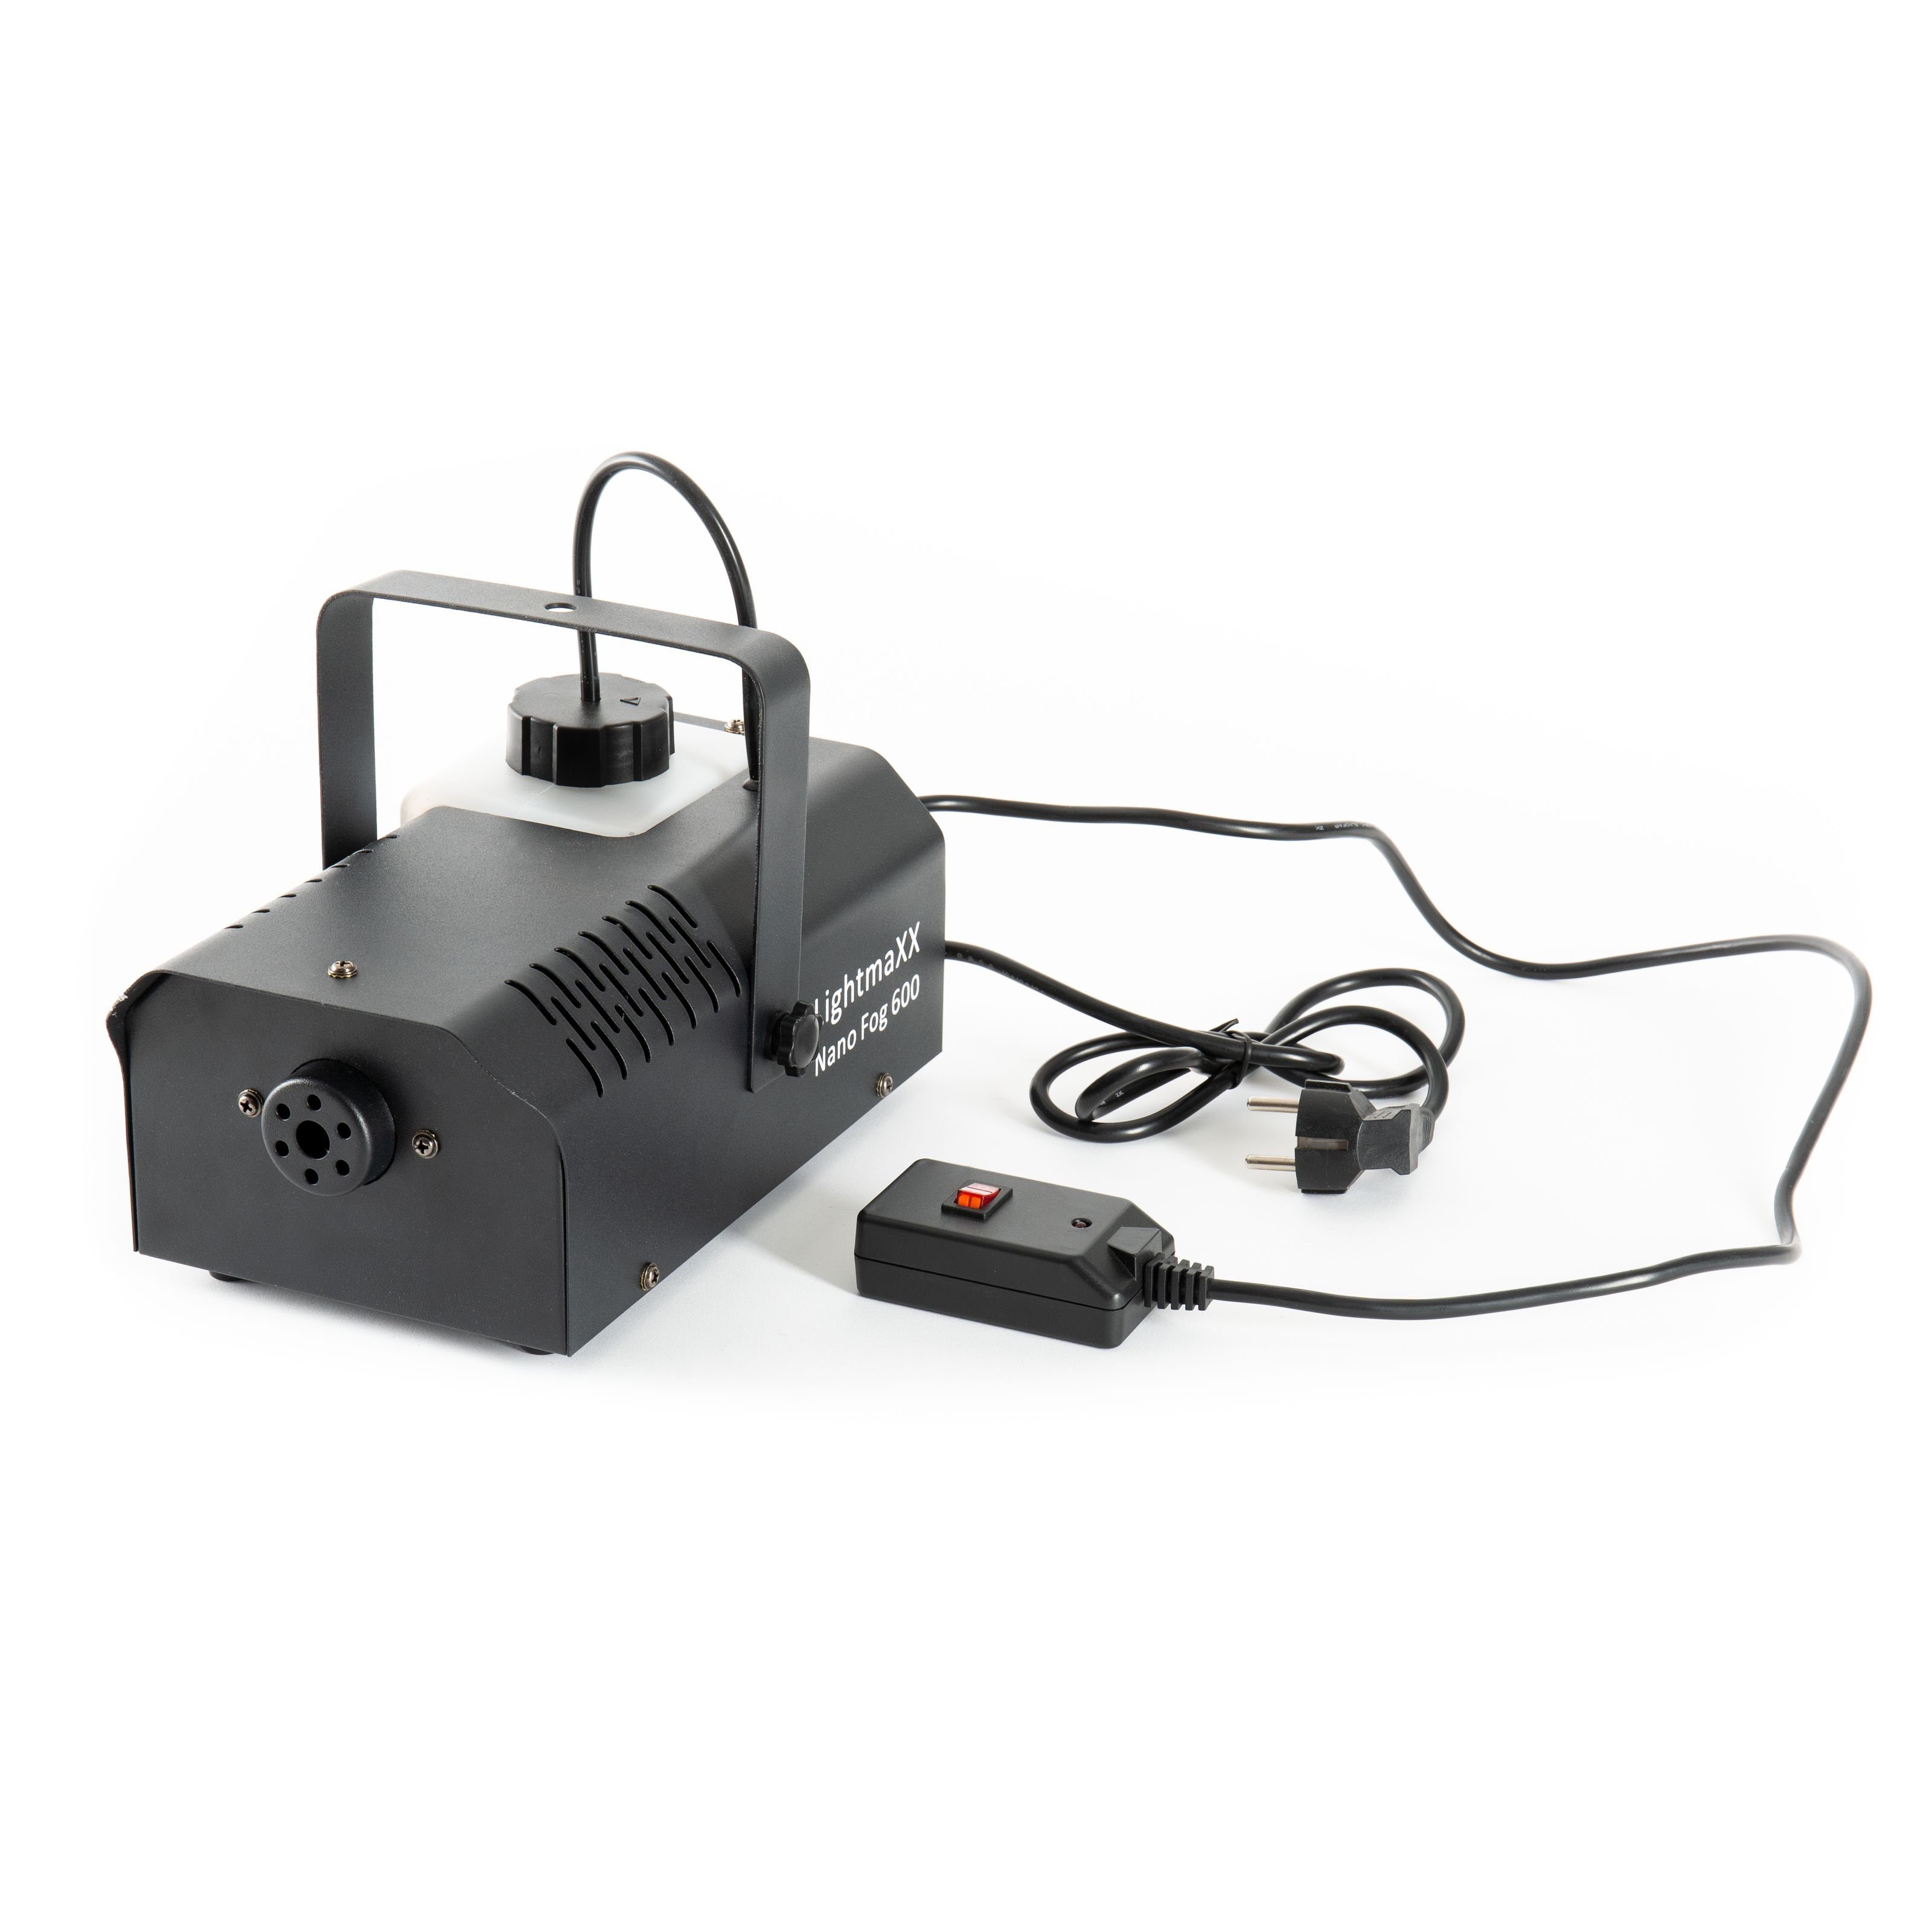 lightmaXX Discolicht, Nano Fog 600 600 Watt, Wired Remote - Nebelmaschine